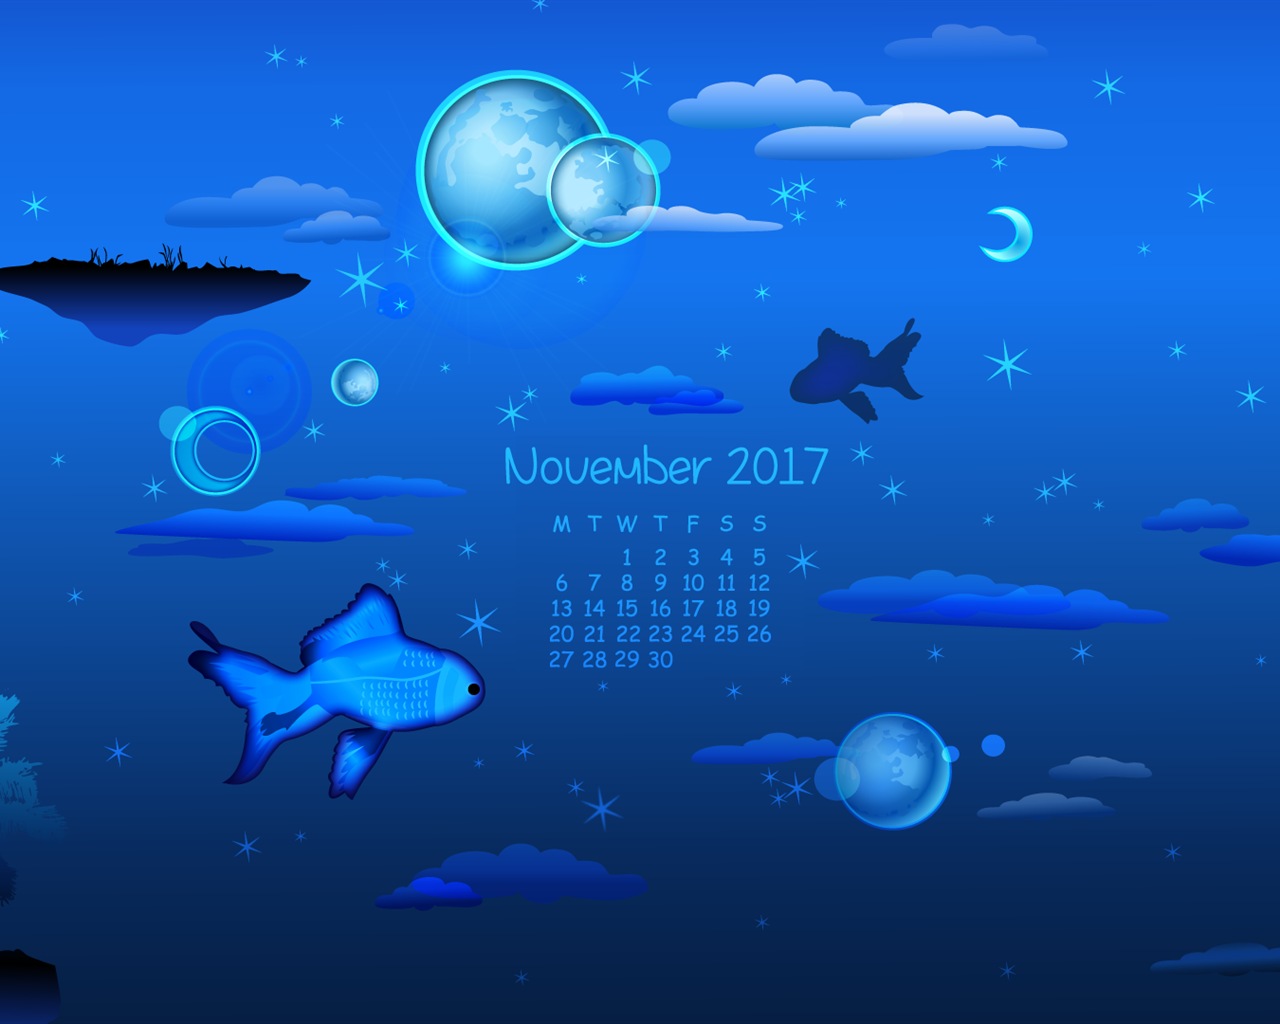 November 2017 Kalendertapete #9 - 1280x1024